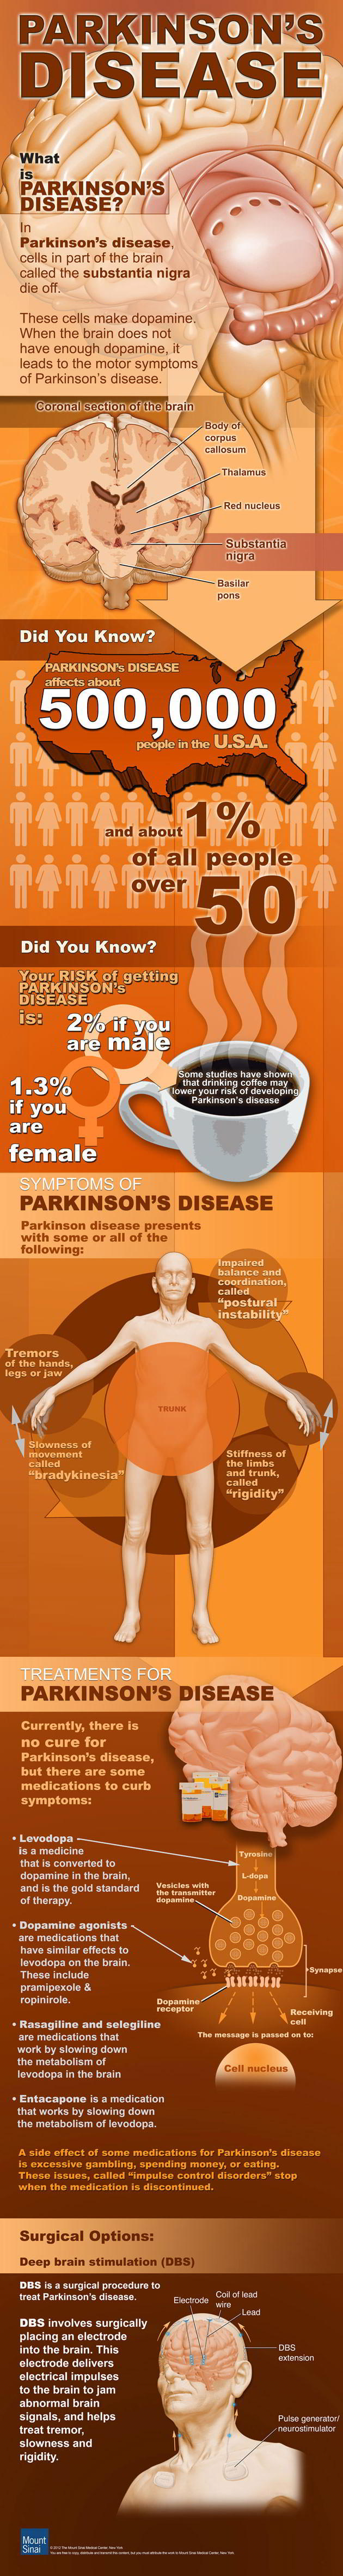 Parkinson’s Disease Infographic